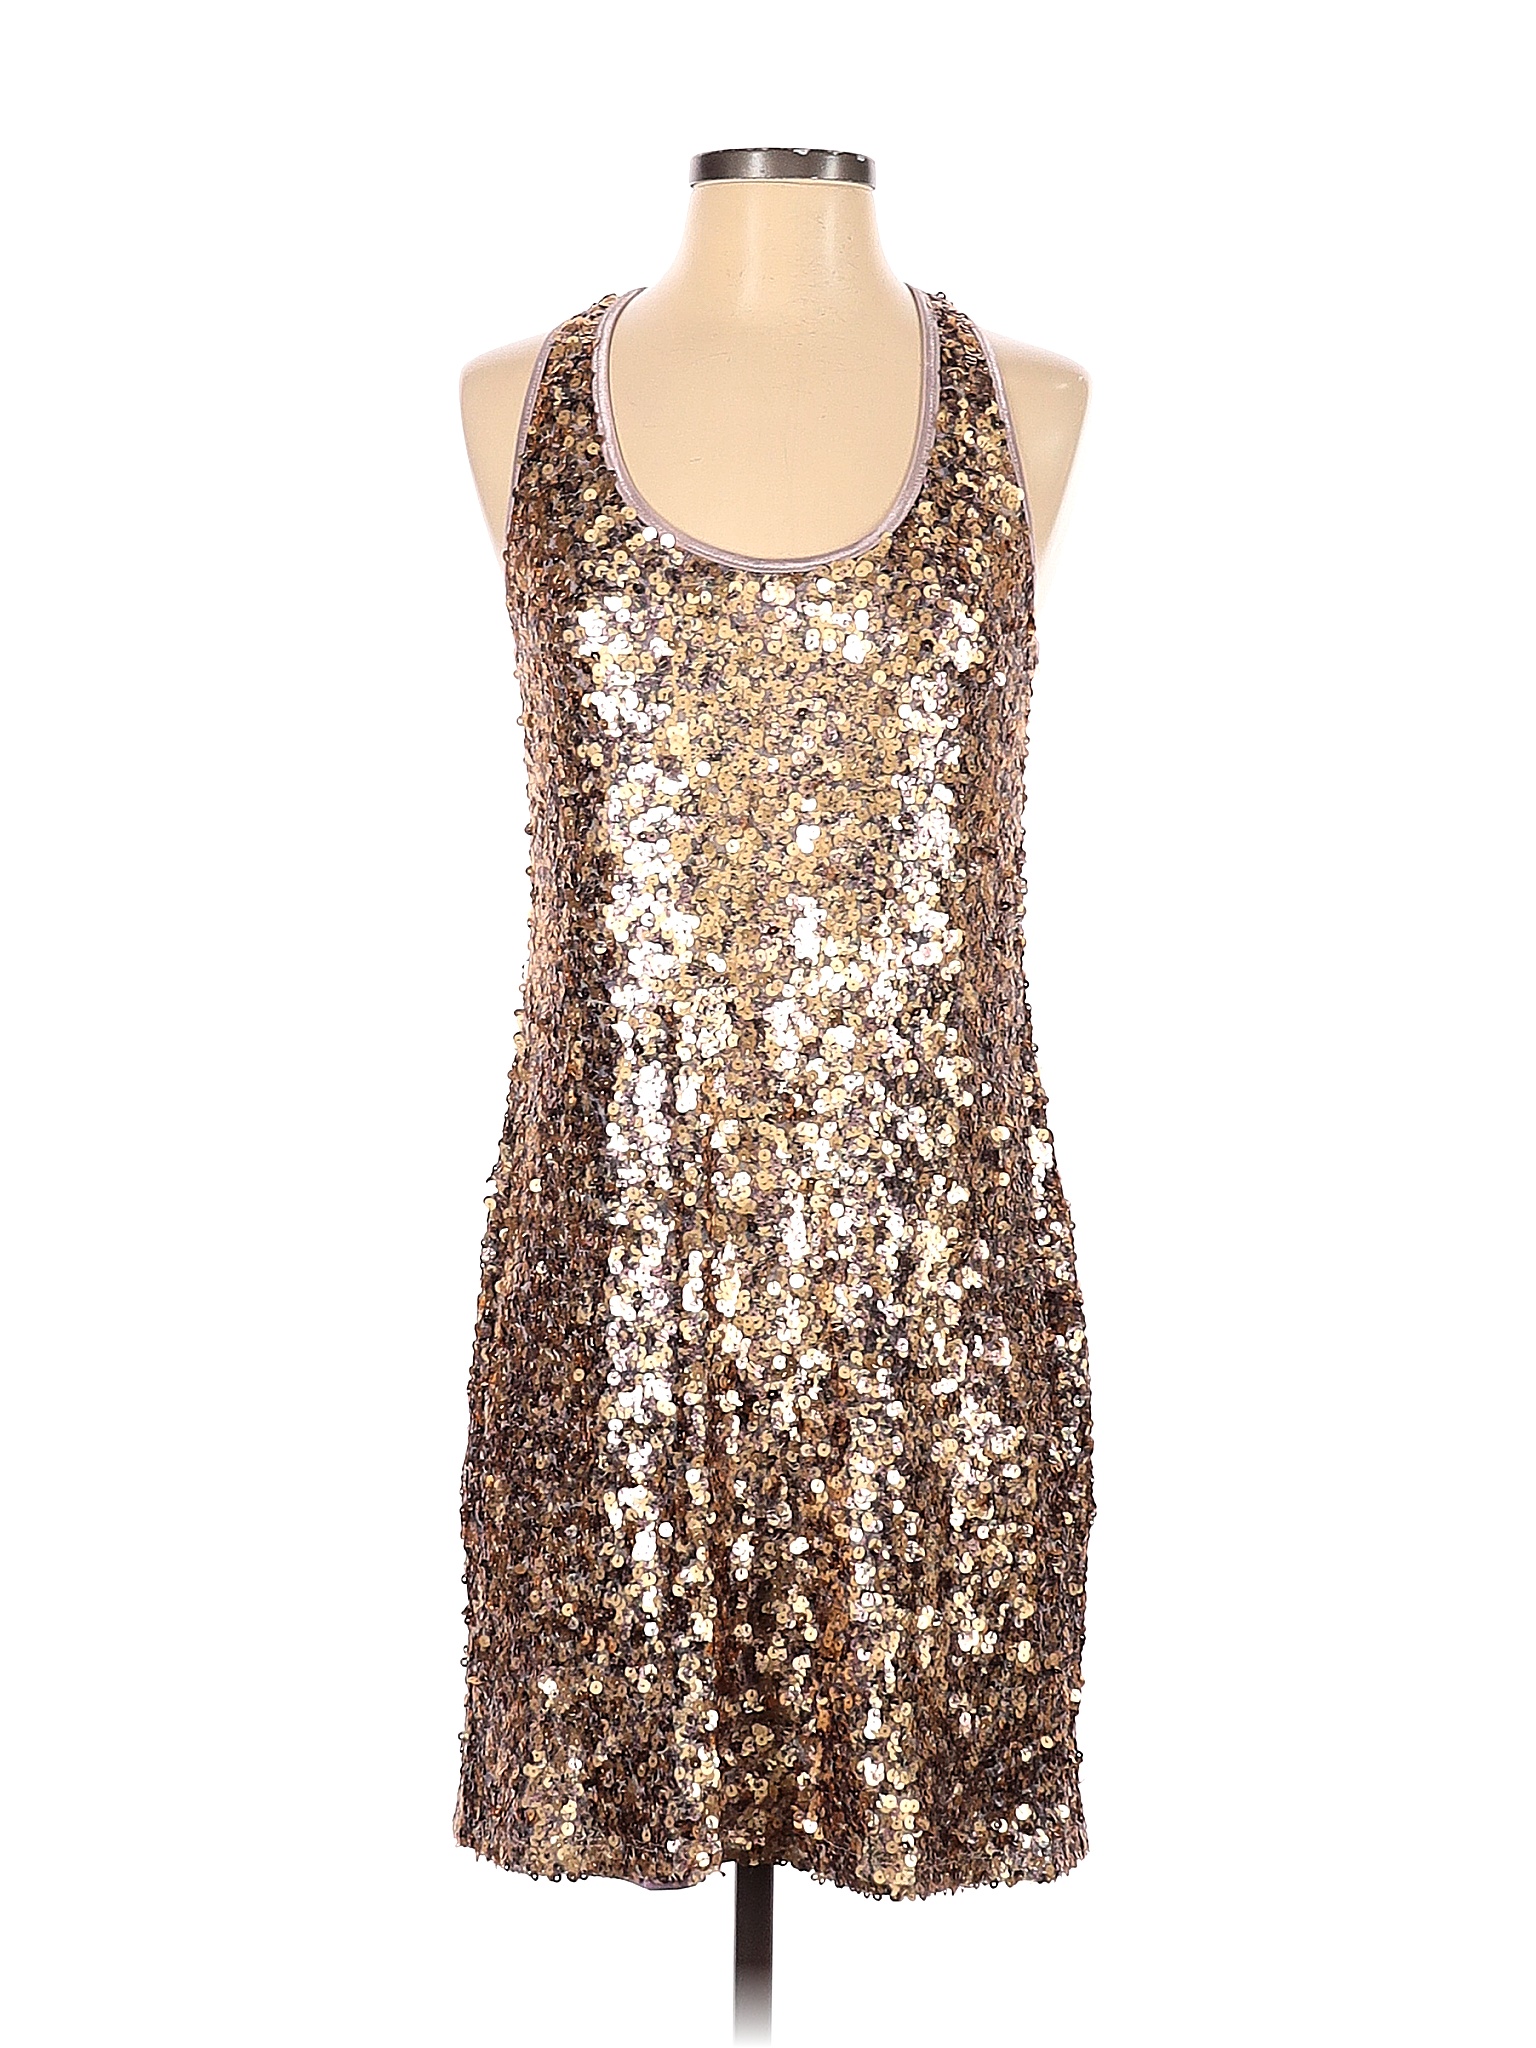 Andrea Behar 100% Nylon Solid Multi Color Brown Casual Dress Size S ...